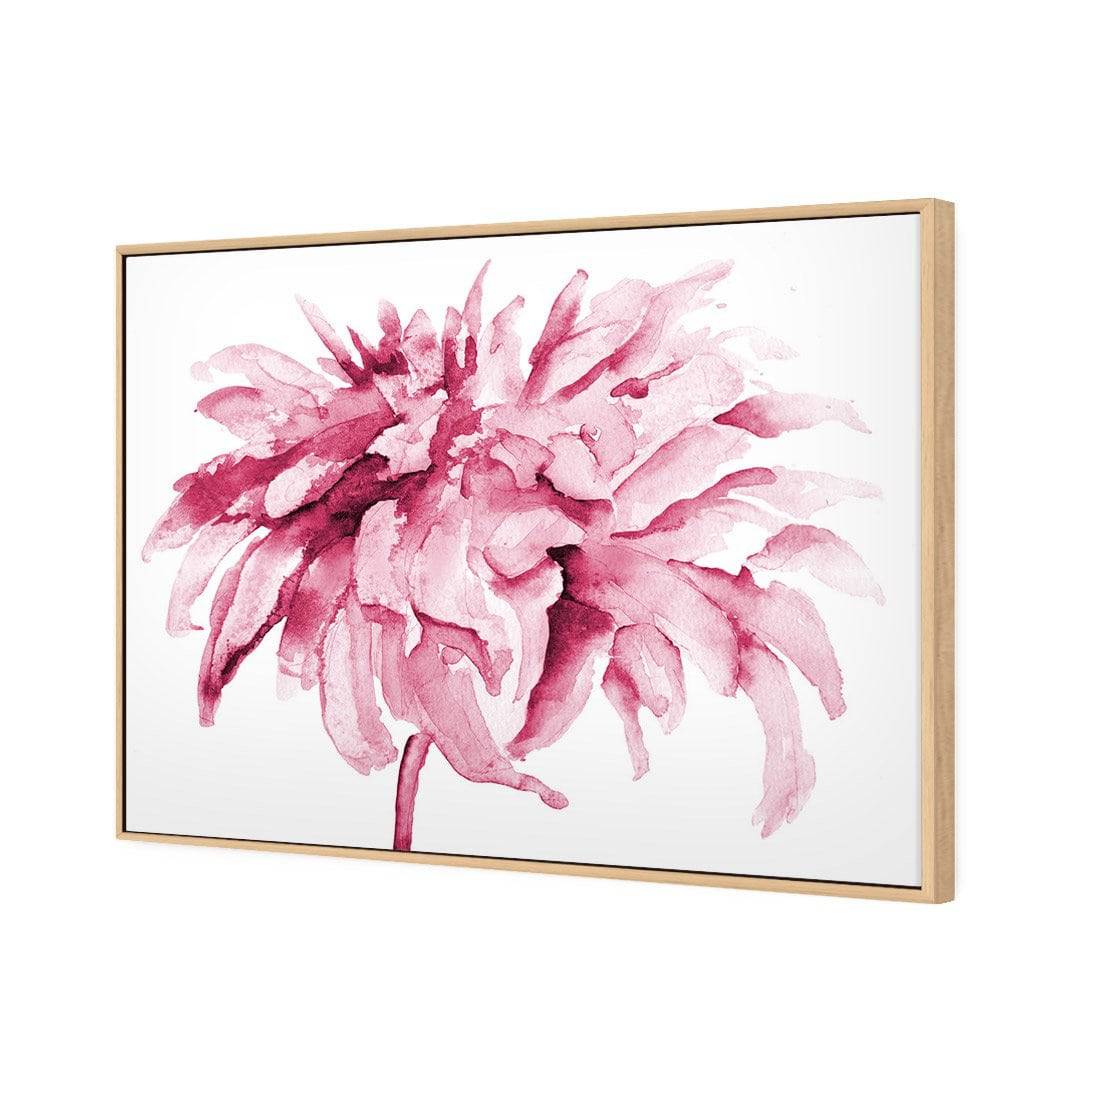 Fairy Floss, Pink Canvas Art-Canvas-Wall Art Designs-45x30cm-Canvas - White Frame-Wall Art Designs